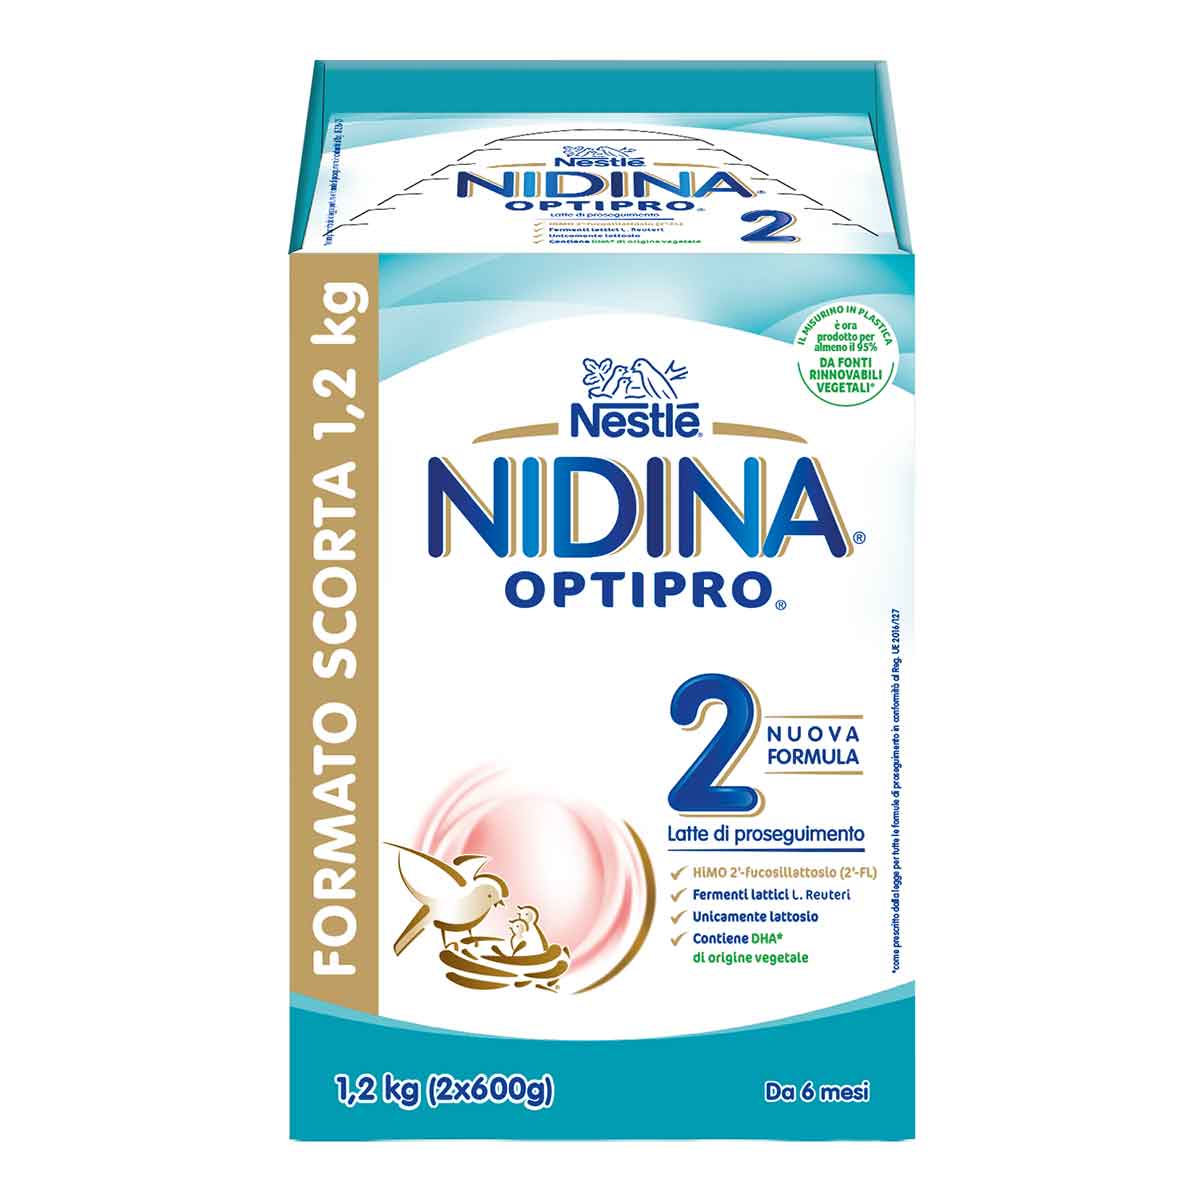 Nestlé NIDINA OPTIPRO 2 1.2kg (2x600g), Latte di proseguimento in polvere, dal 6° mese compiuto al 12°